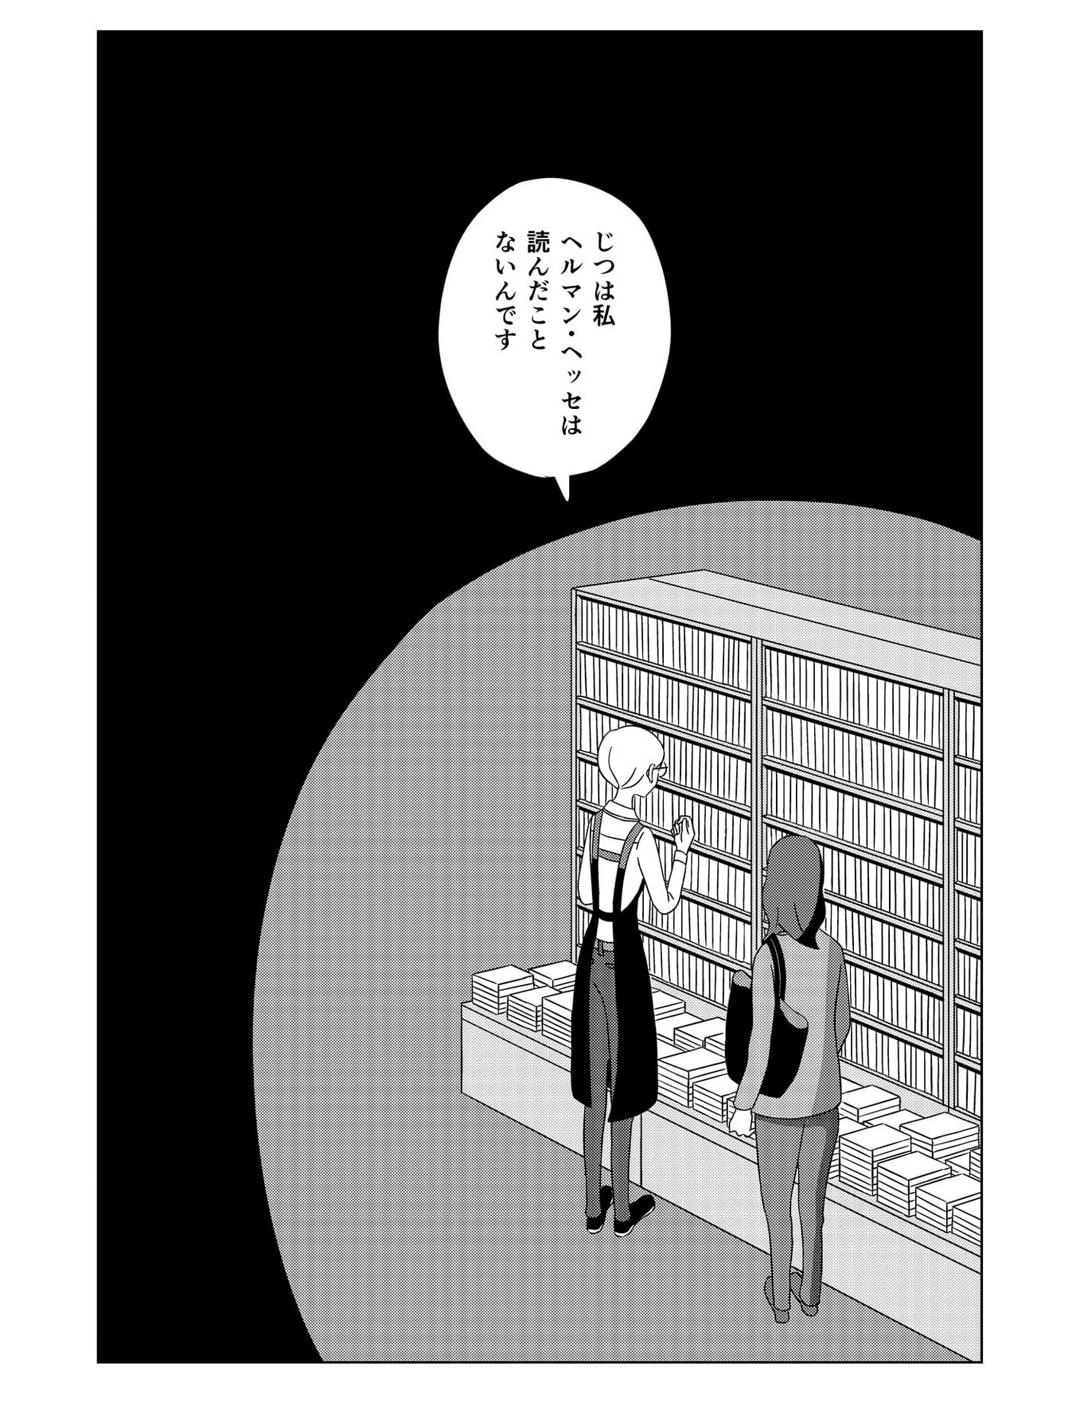 12月23日分は「書店員 波山個間子」

書店の「ブックアドバイザー」が主人公の漫画
日...